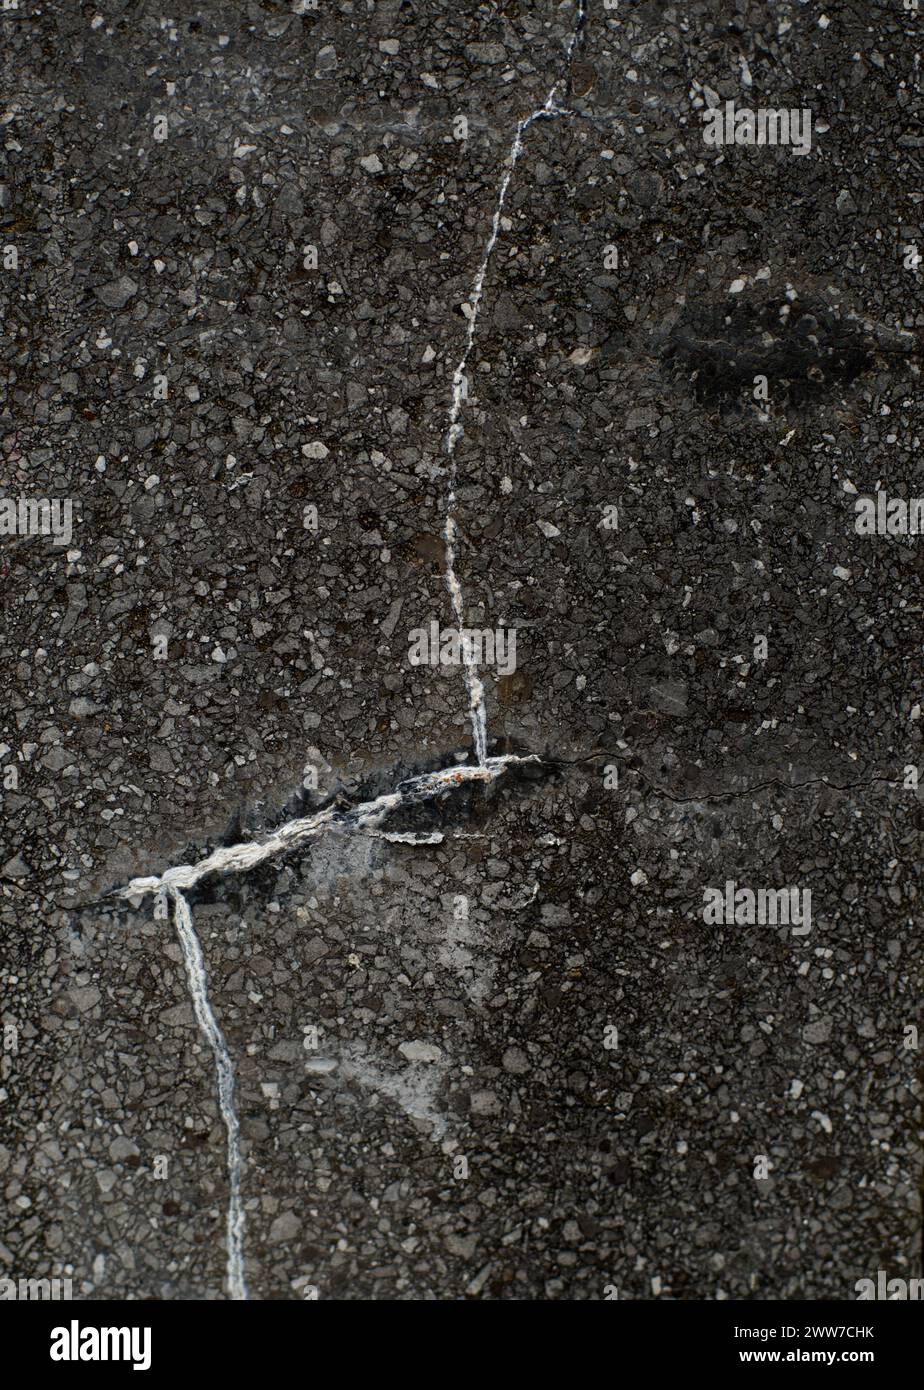 Oberfläche einer schwarz-grauen Steinsäule mit weißen Spaltlinien, die die Linien eines menschlichen Gesichtes nachahmen, und einem schwarzen Augenfleck oben rechts Stockfoto